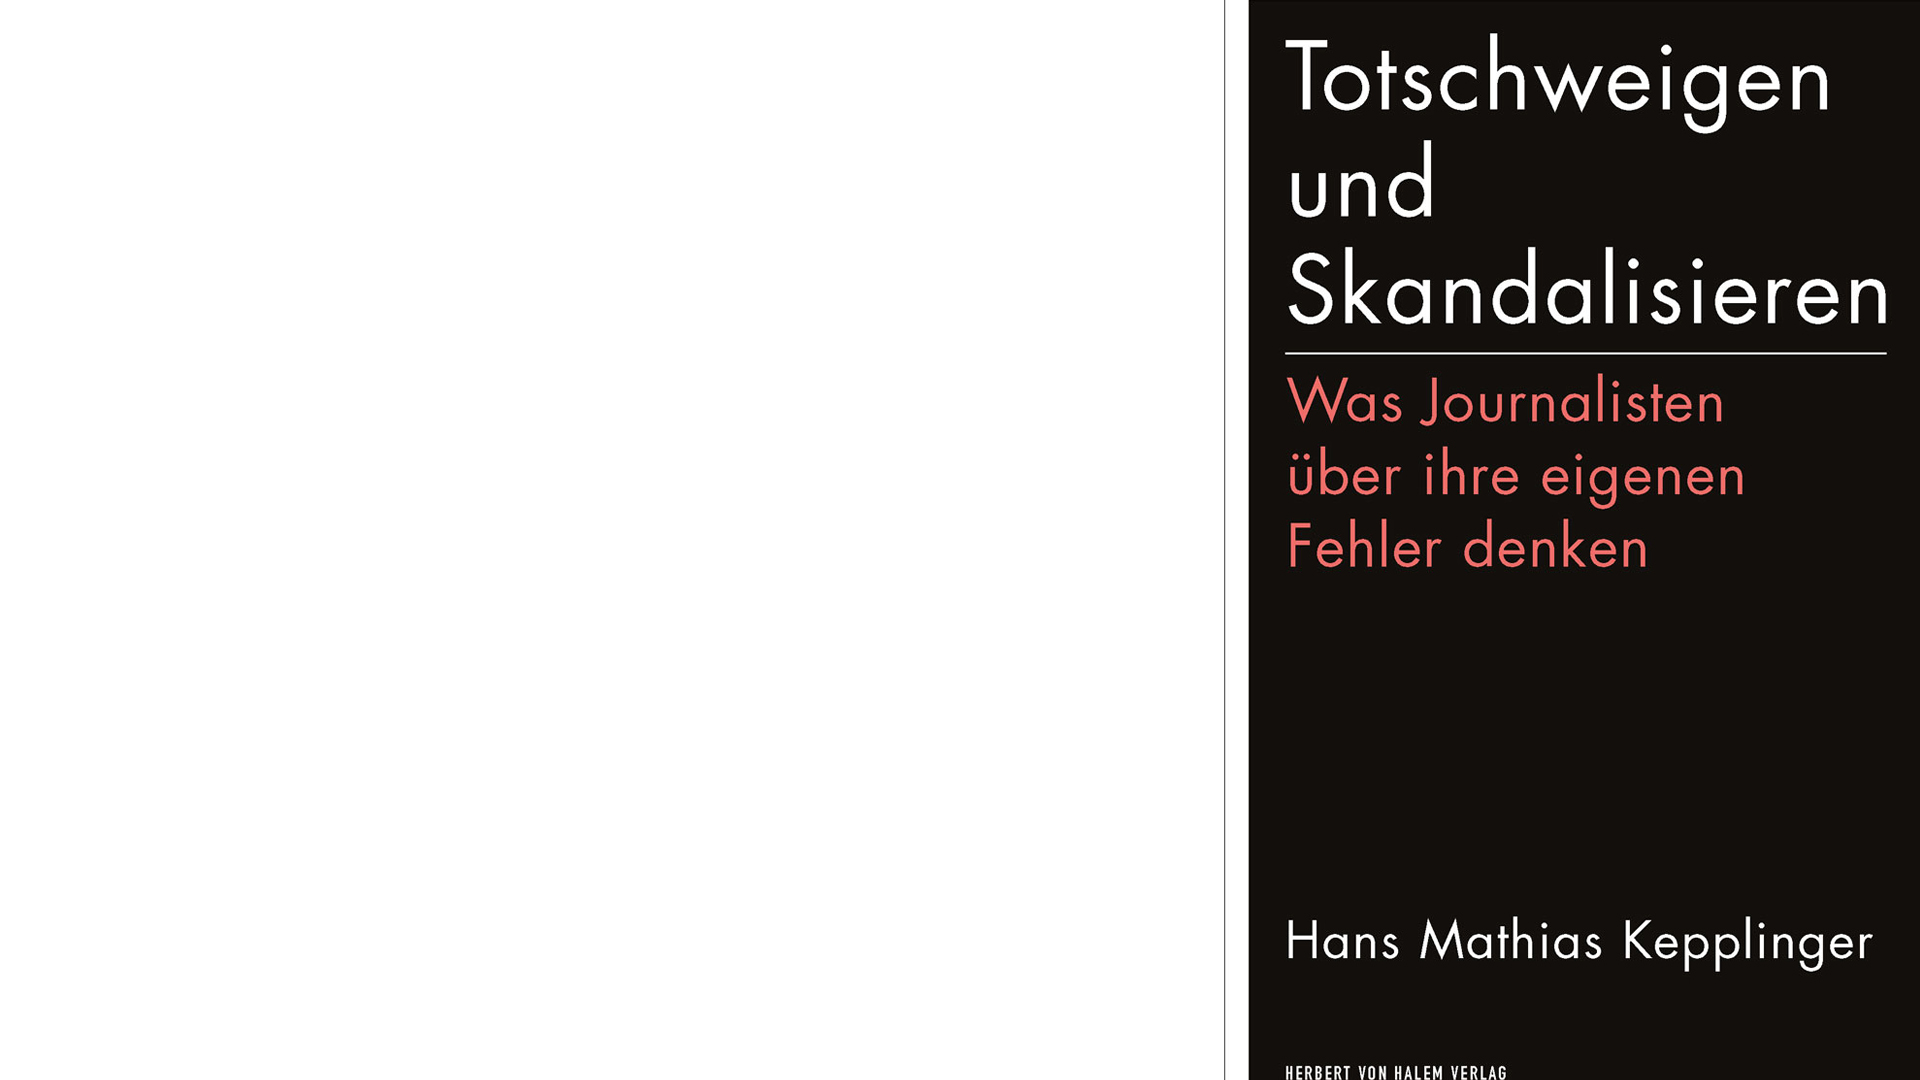 Hans Mathias Kepplinger: „Totschweigen und Skandalisieren. Was Journalisten über ihre eigenen Fehler denken“, Herbert-von-Halem-Verlag, 232 Seiten, 21 Euro, ISBN 9783869622842